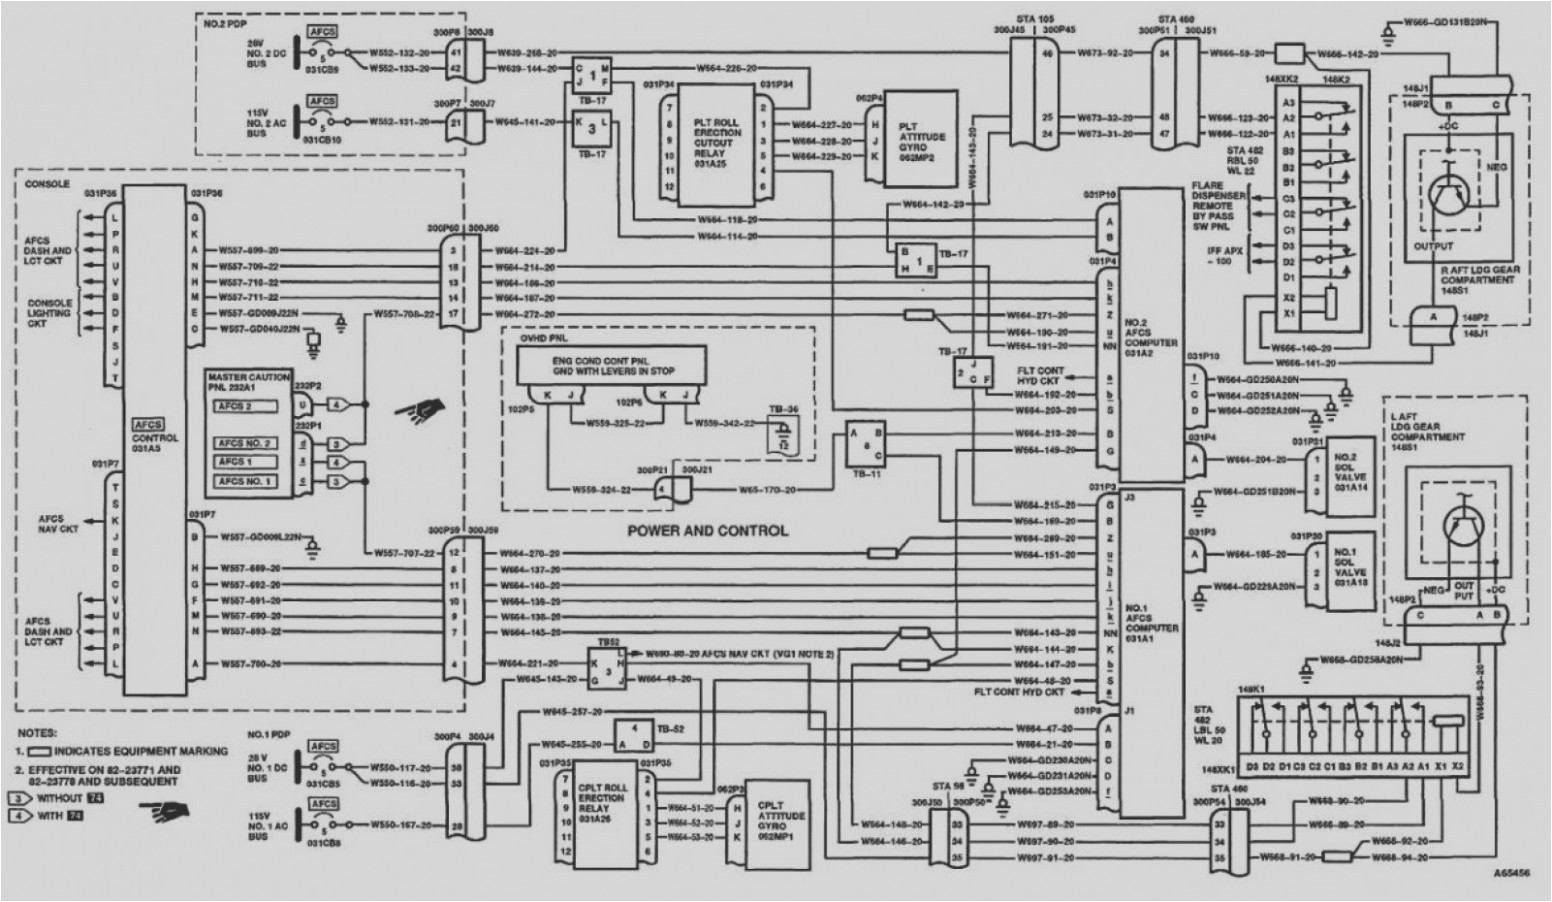 compaq presario motherboard sr1230 wiring diagram wiring diagramcompaq presario motherboard sr1230 wiring diagram wiring schematiccompaq presario